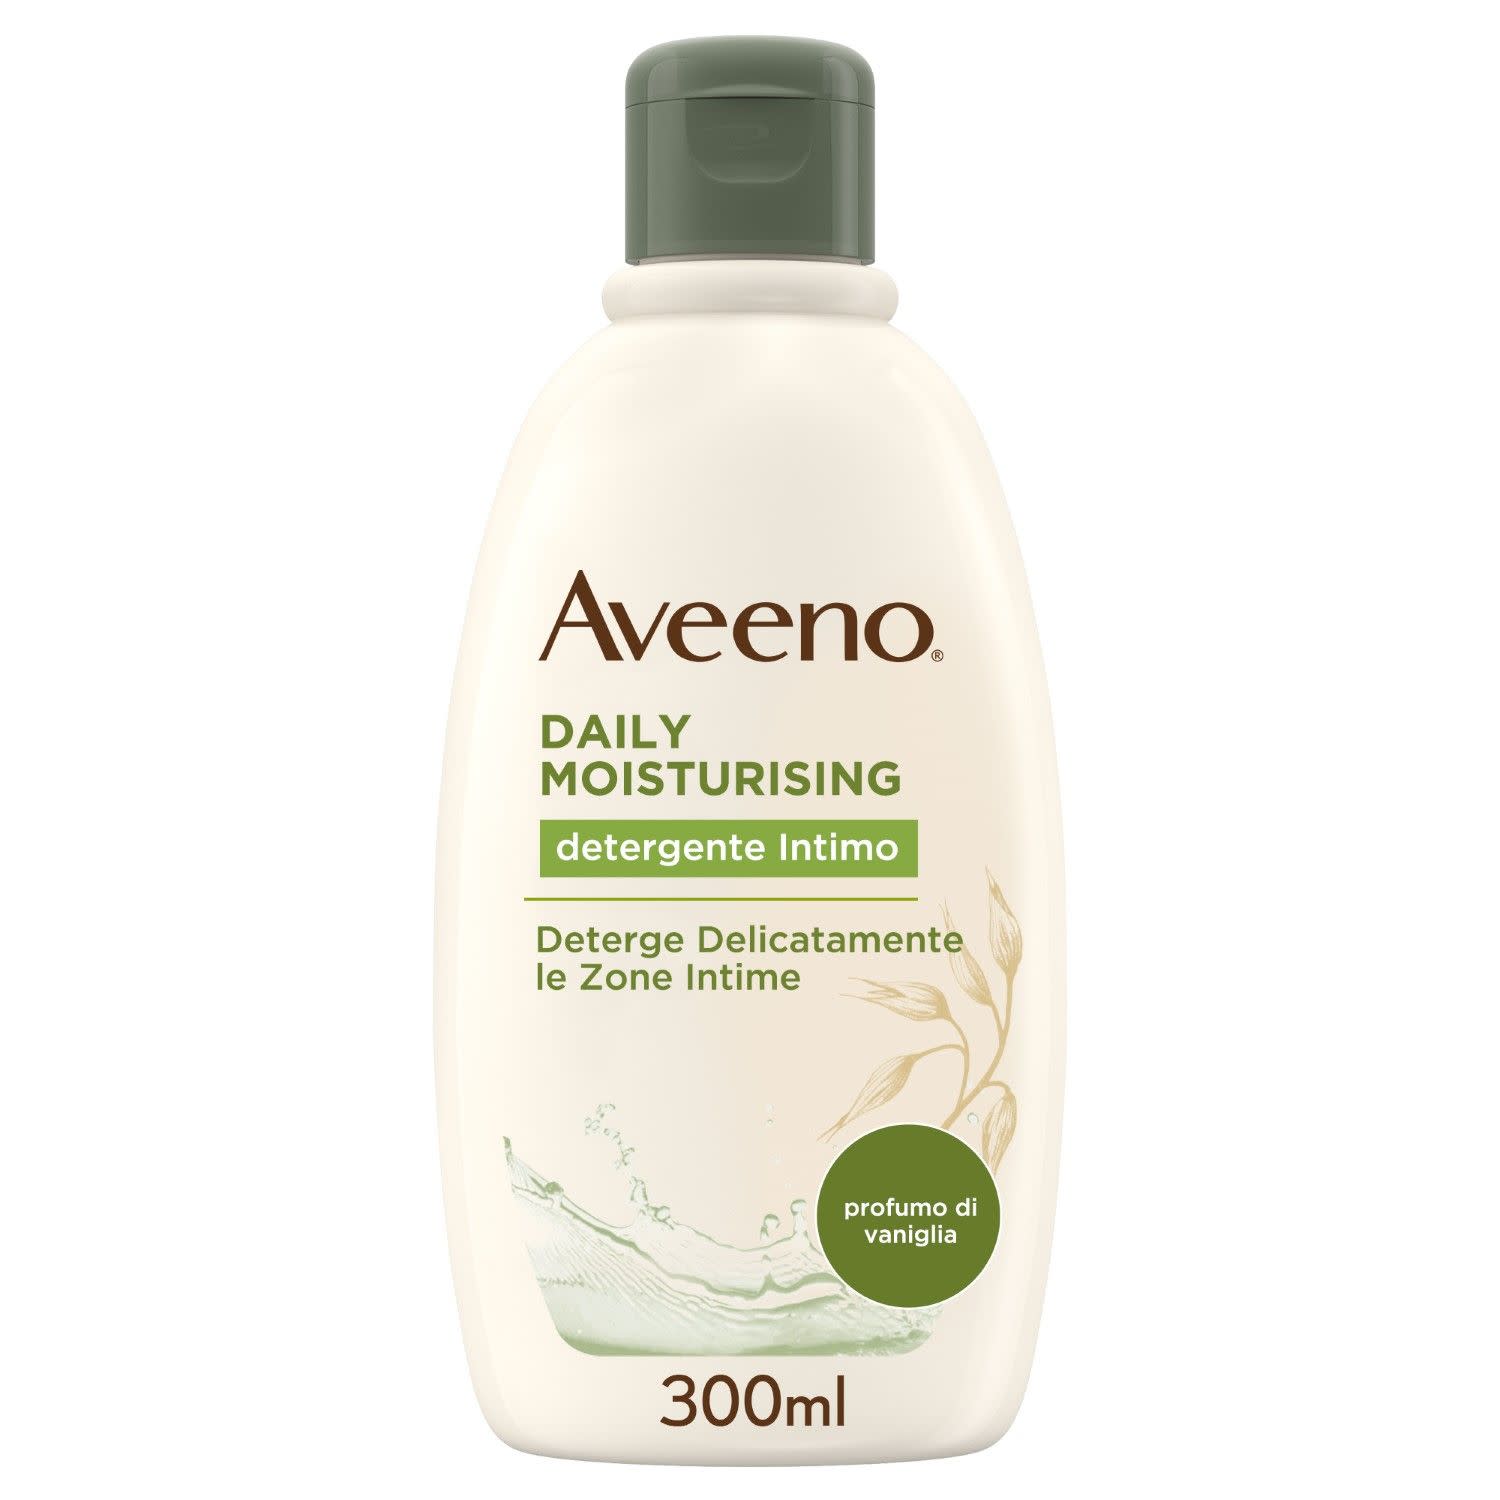 979276983 - Aveeno Daily Moisturizing Detergente Intimo 300ml - 4708305_2.jpg